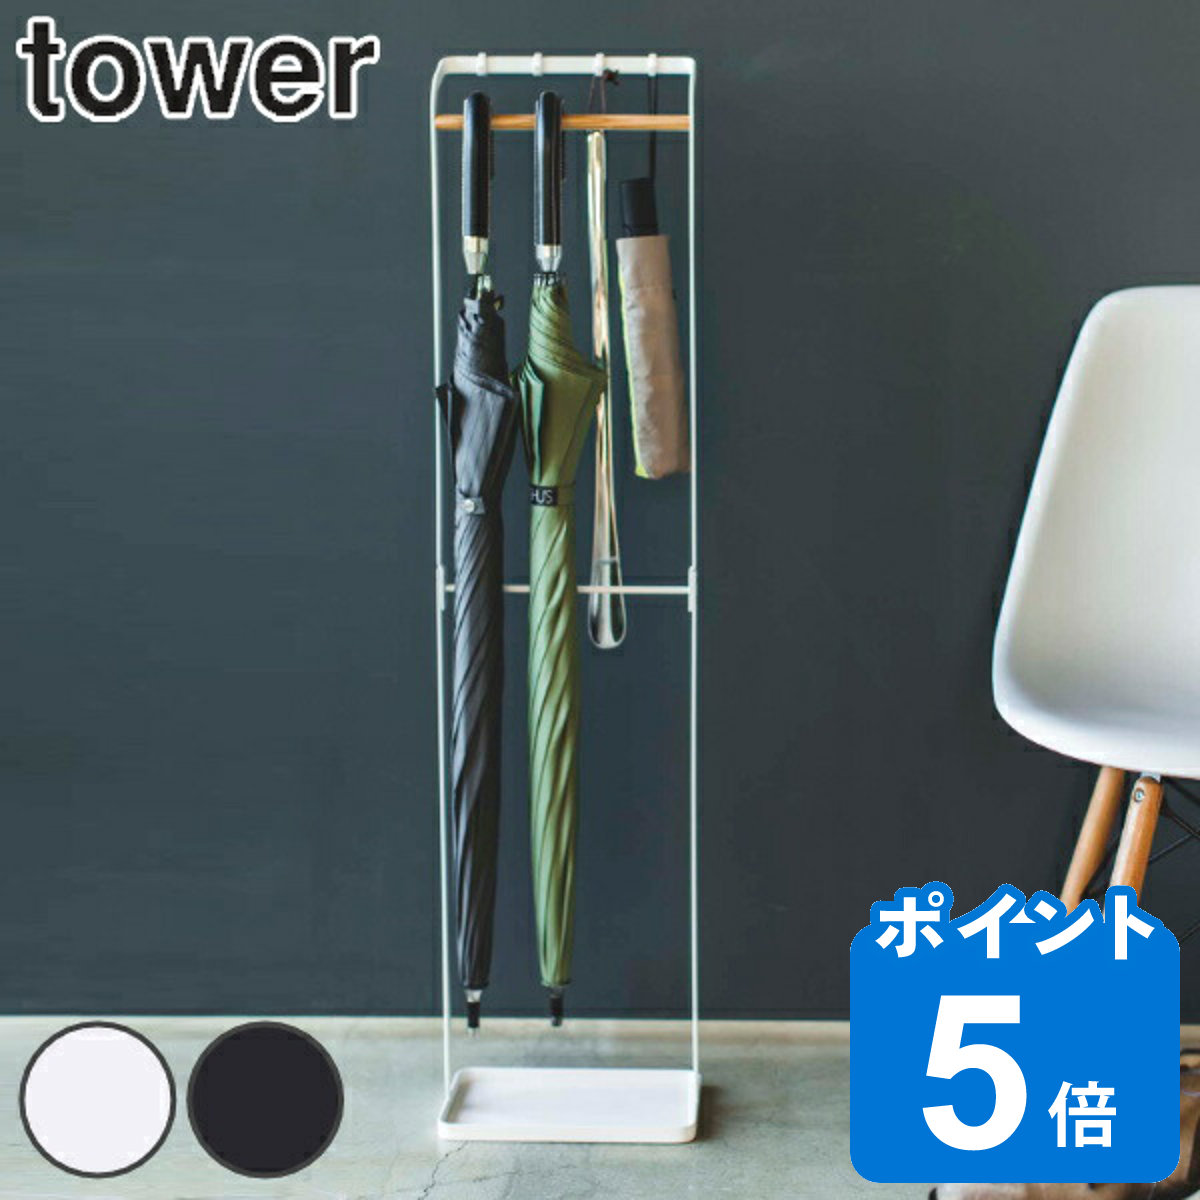 山崎実業 tower 引っ掛けアンブレラスタンド タワー